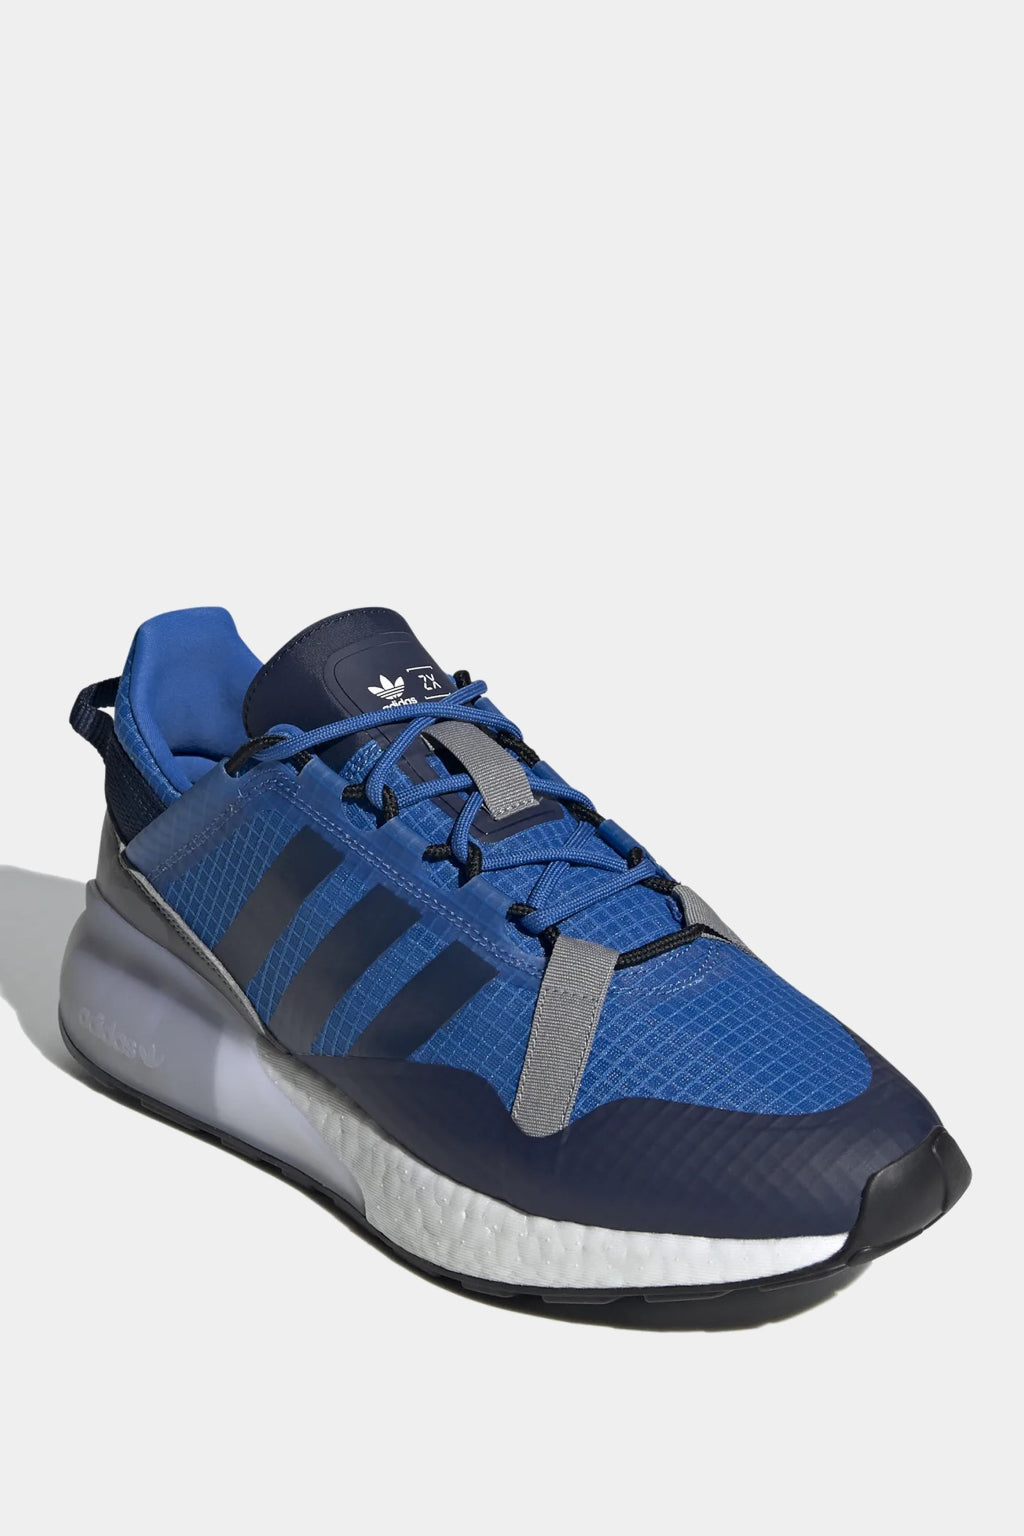 Adidas Originals - Zx 2k Boost Pure Shoes